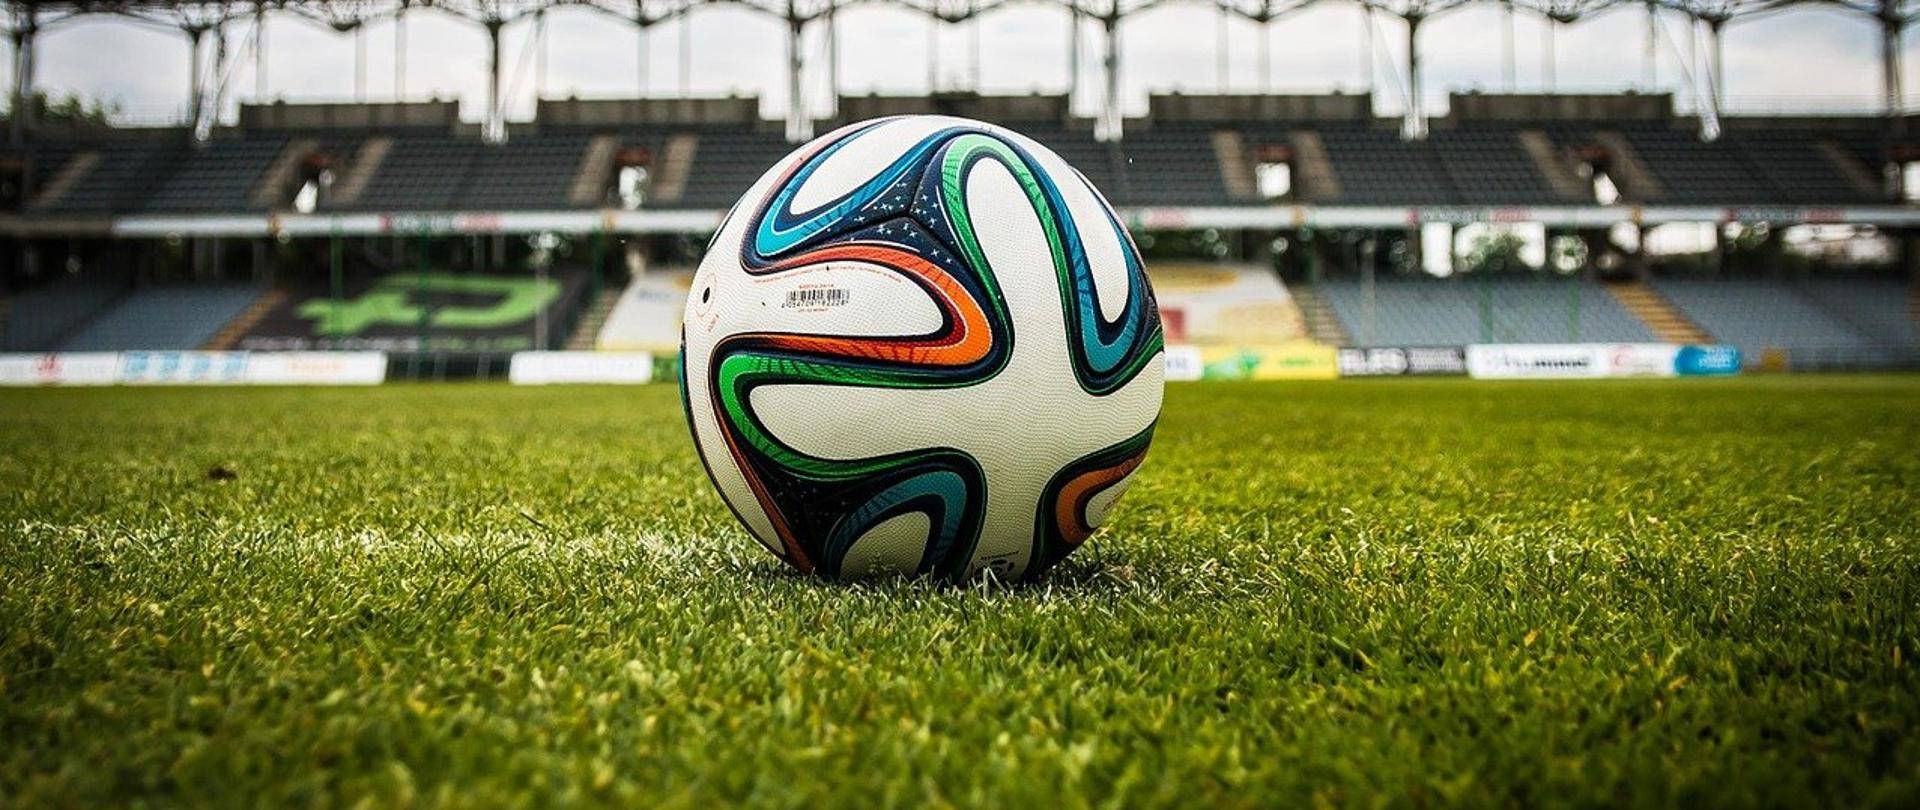 Zdjęcie przykładowe piłki nożnej - piłka na trawie. W tle trybuny stadionu. 